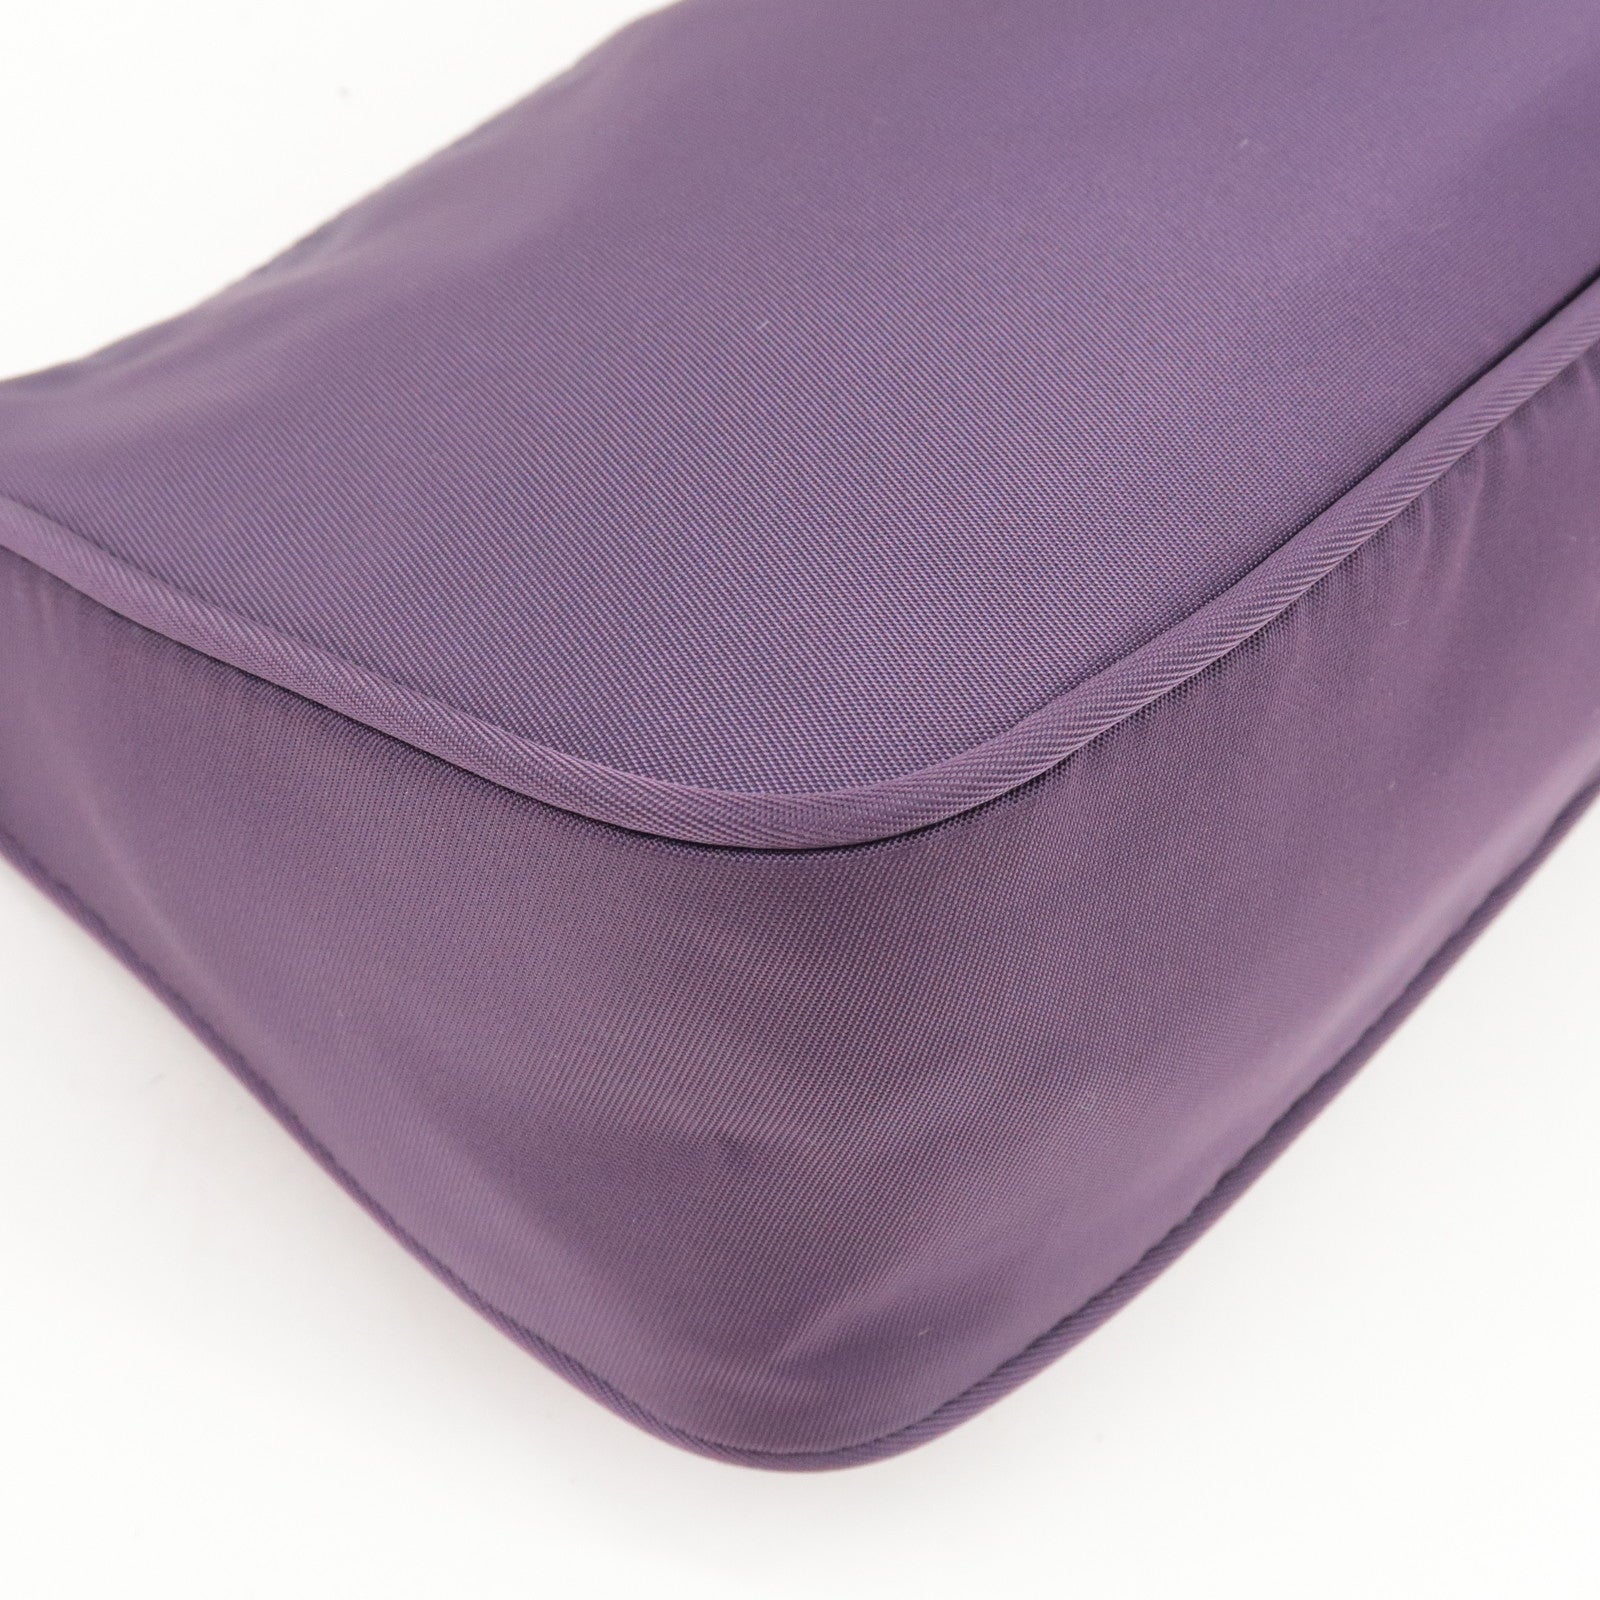 Prada Purple Nylon Handbag – thankunext.us